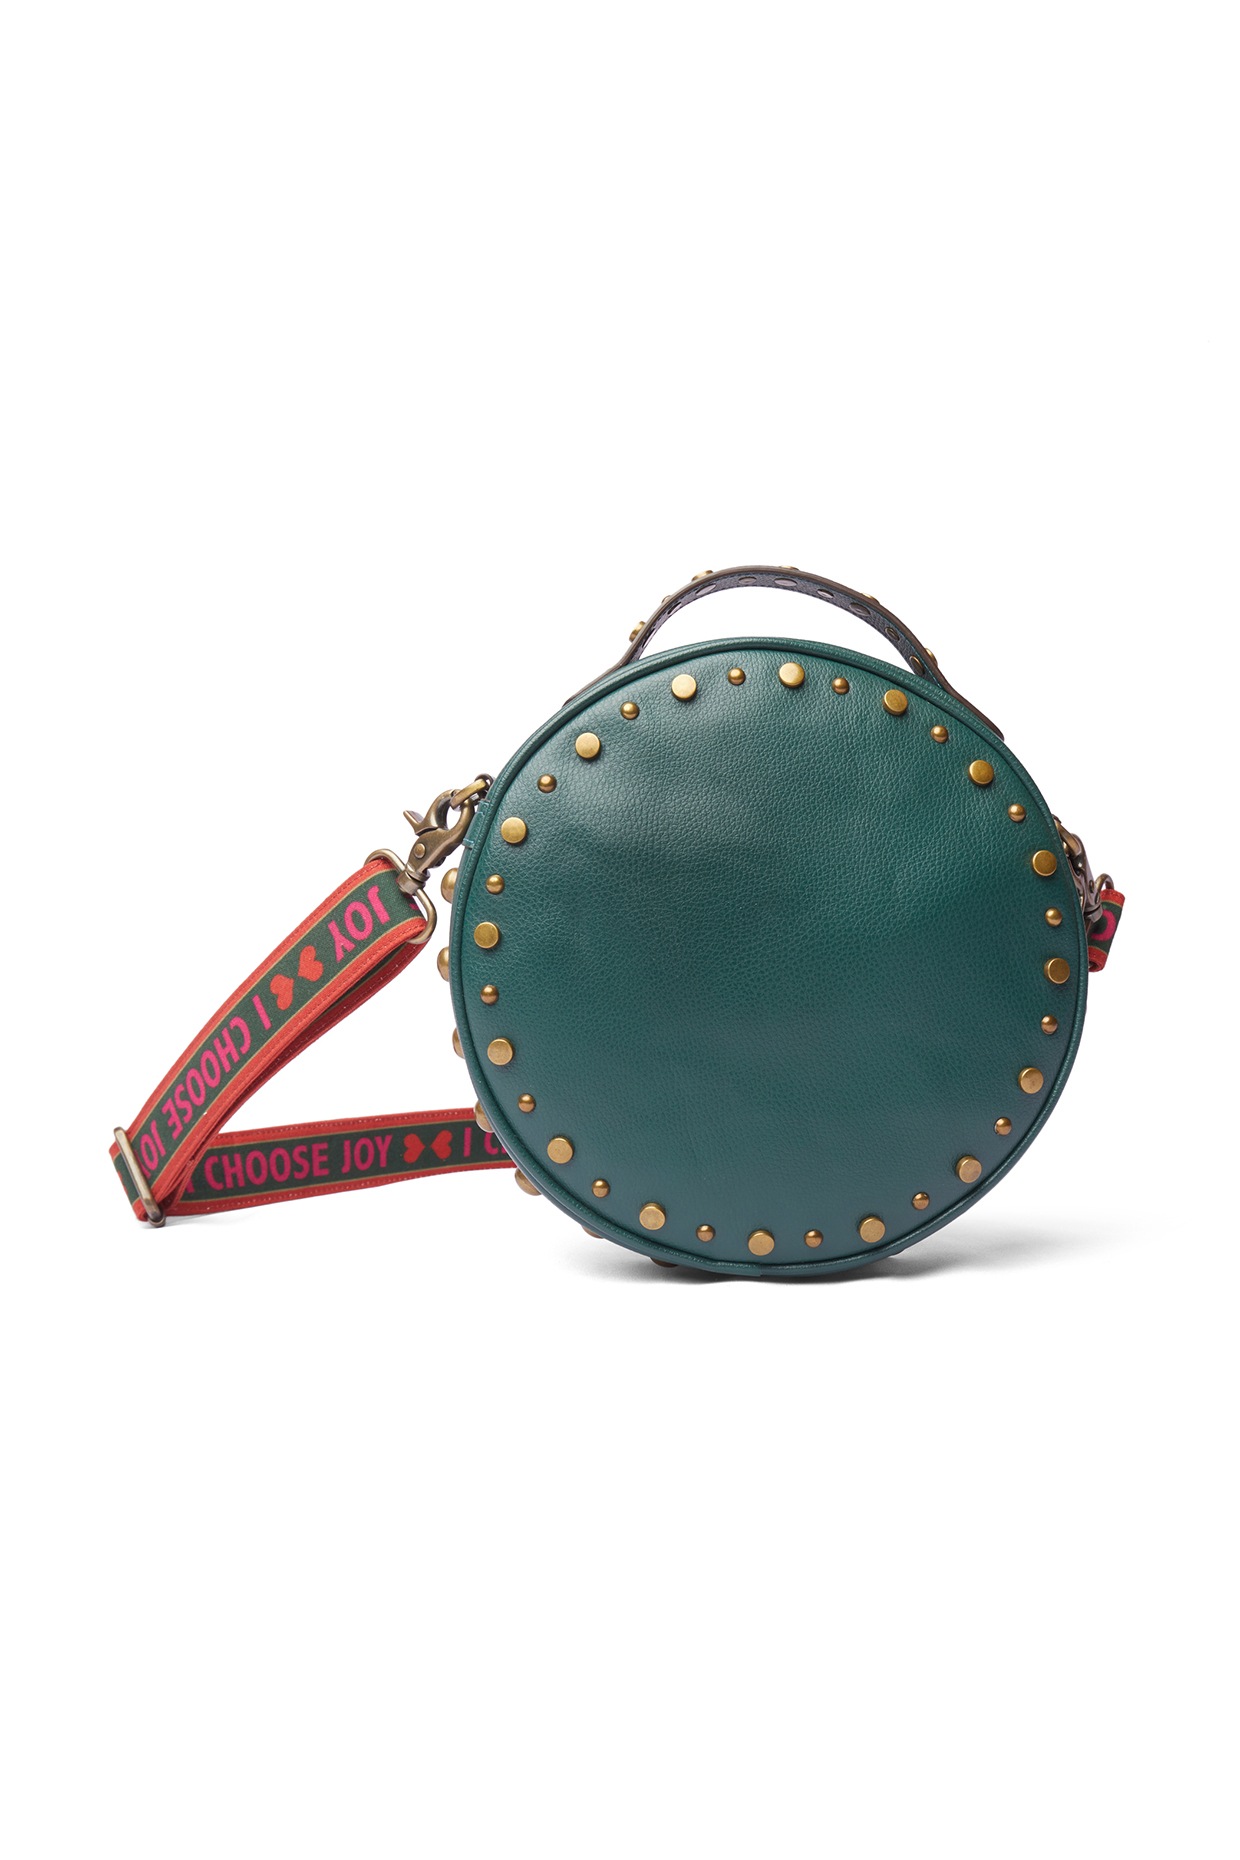 Forest Green Vintage Coach Willis Handbag. Dark Green Designer Satchel Purse.  | Satchel purse, Purses, Handbag